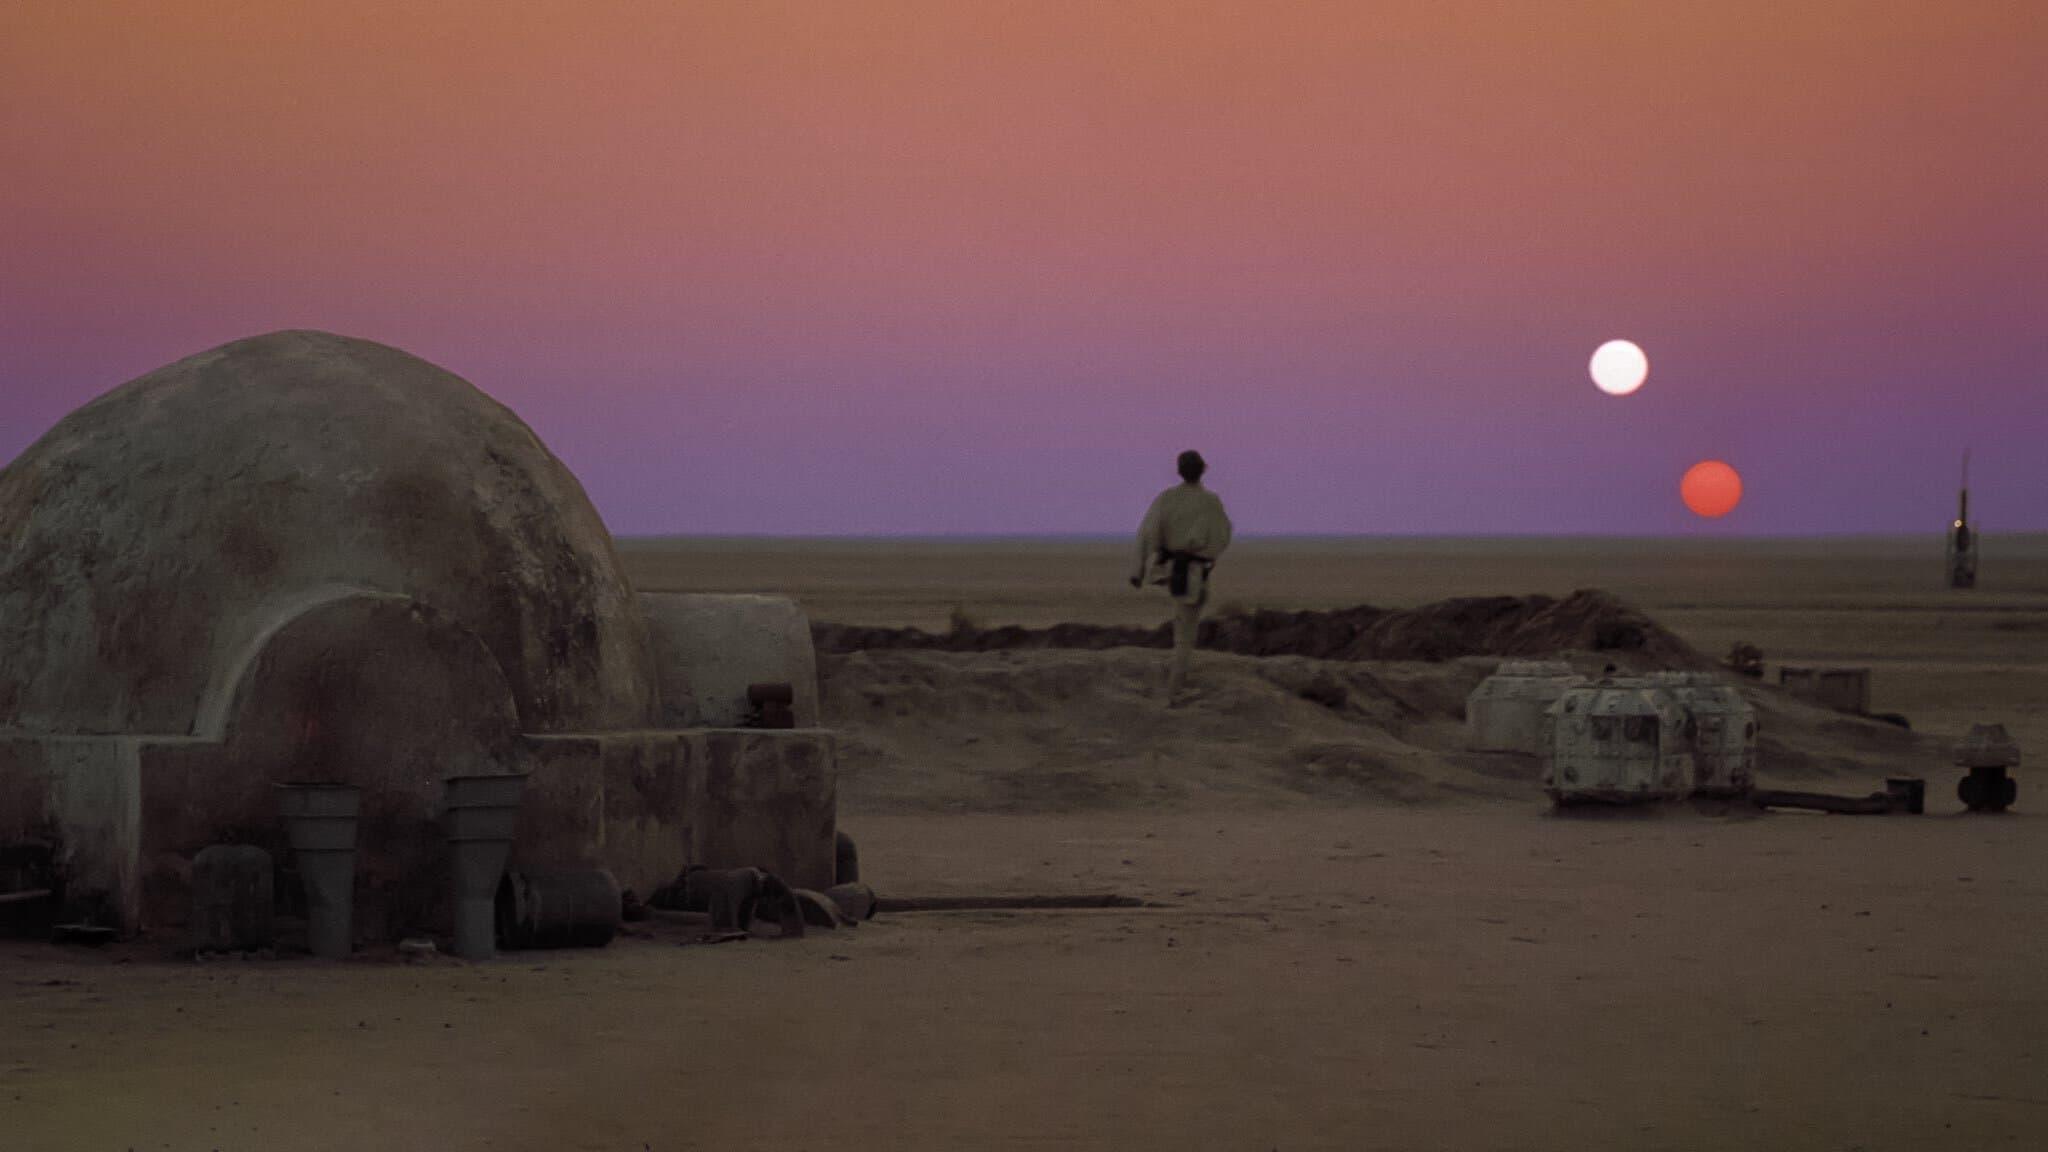 Star Wars backdrop